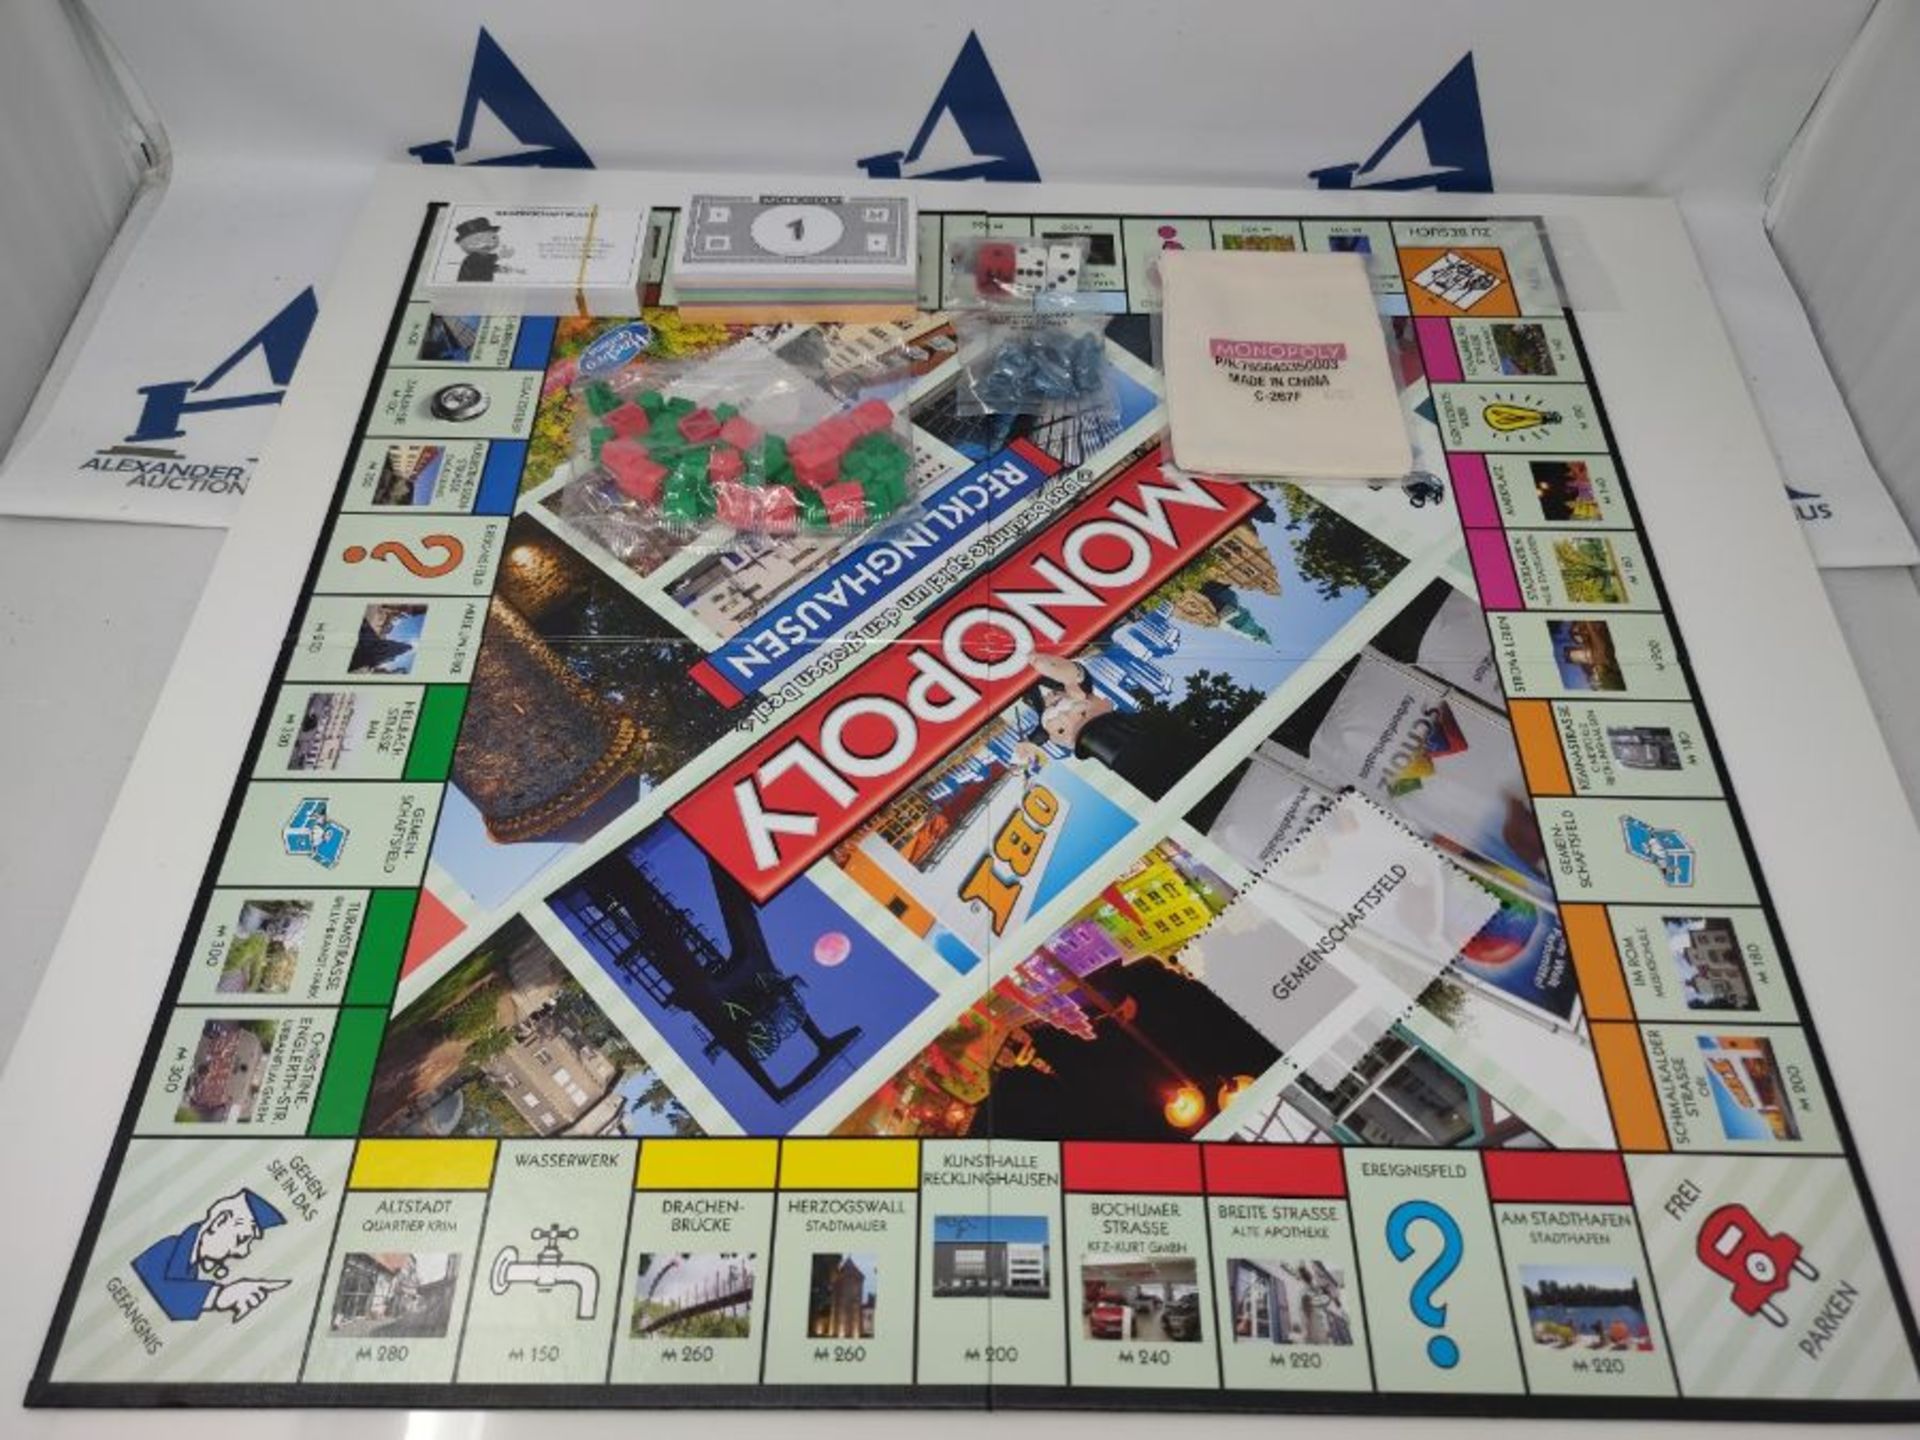 Monopoly Recklinghausen Stadt Edition - das weltberühmte Spiel um Grundbesitz und Imm - Image 3 of 3